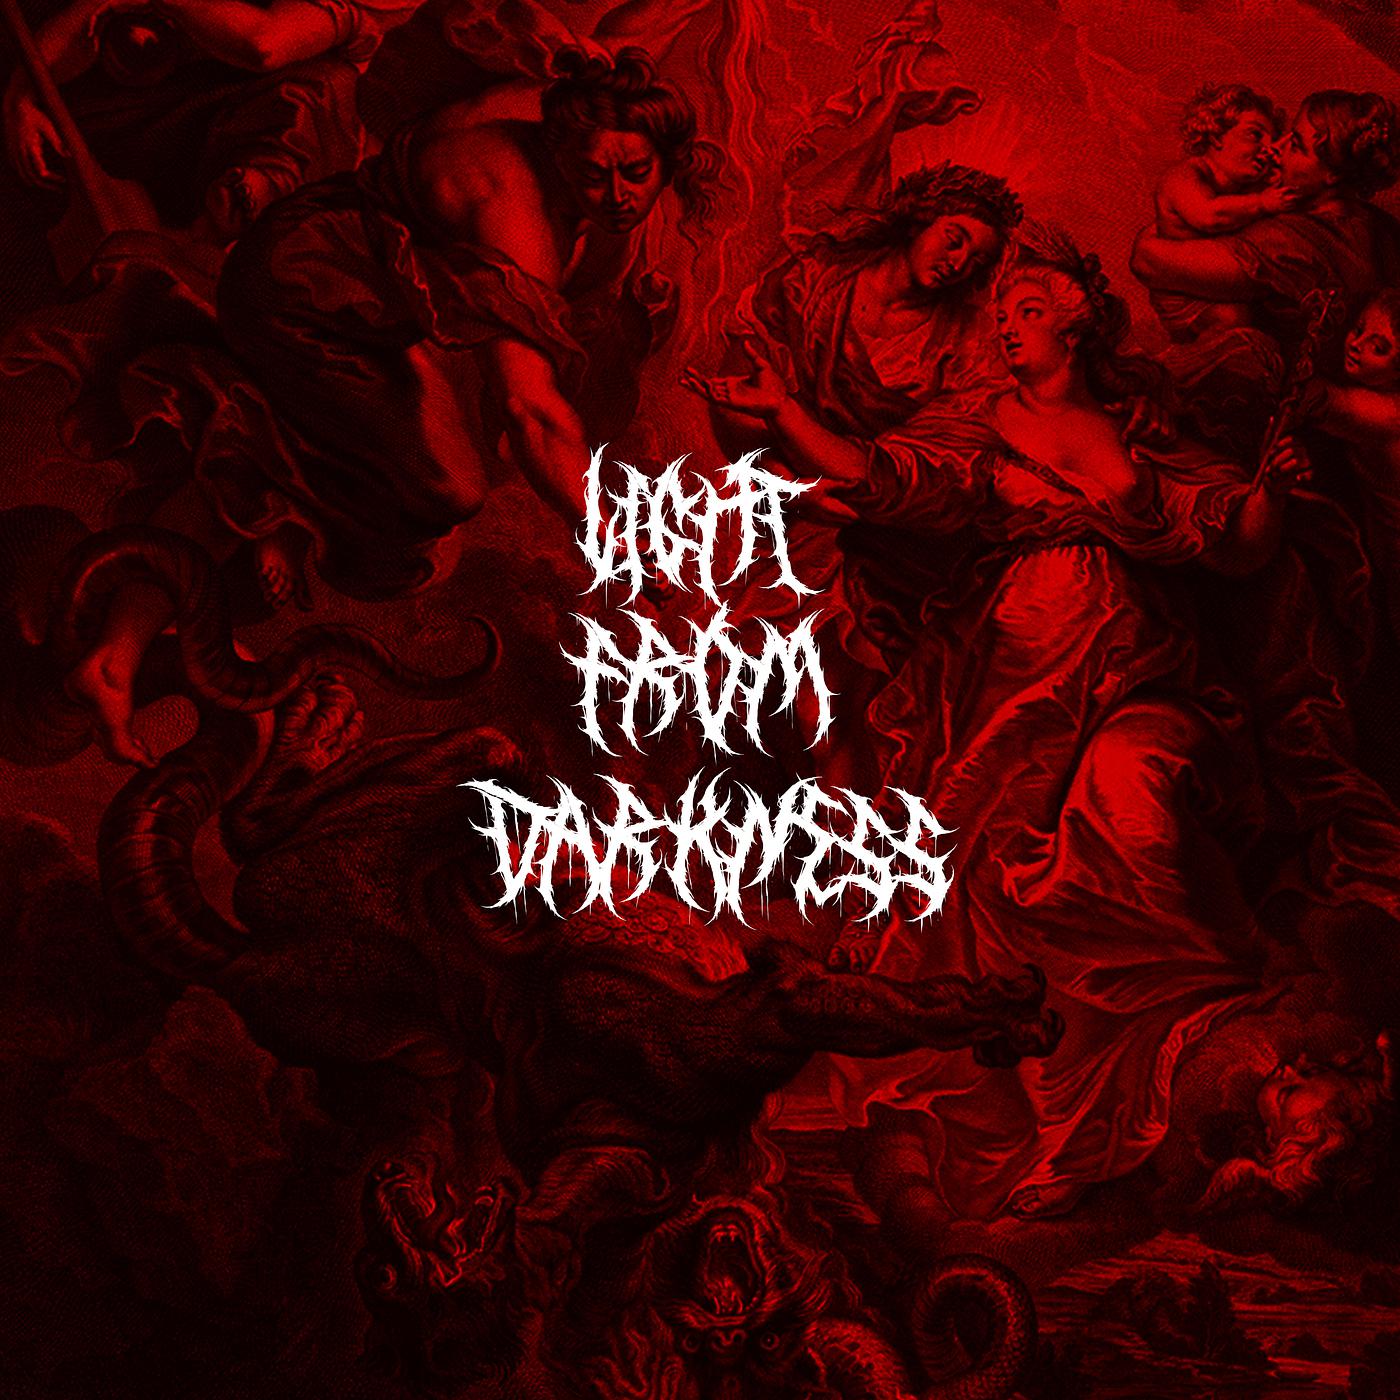 Постер альбома Light from Darkness